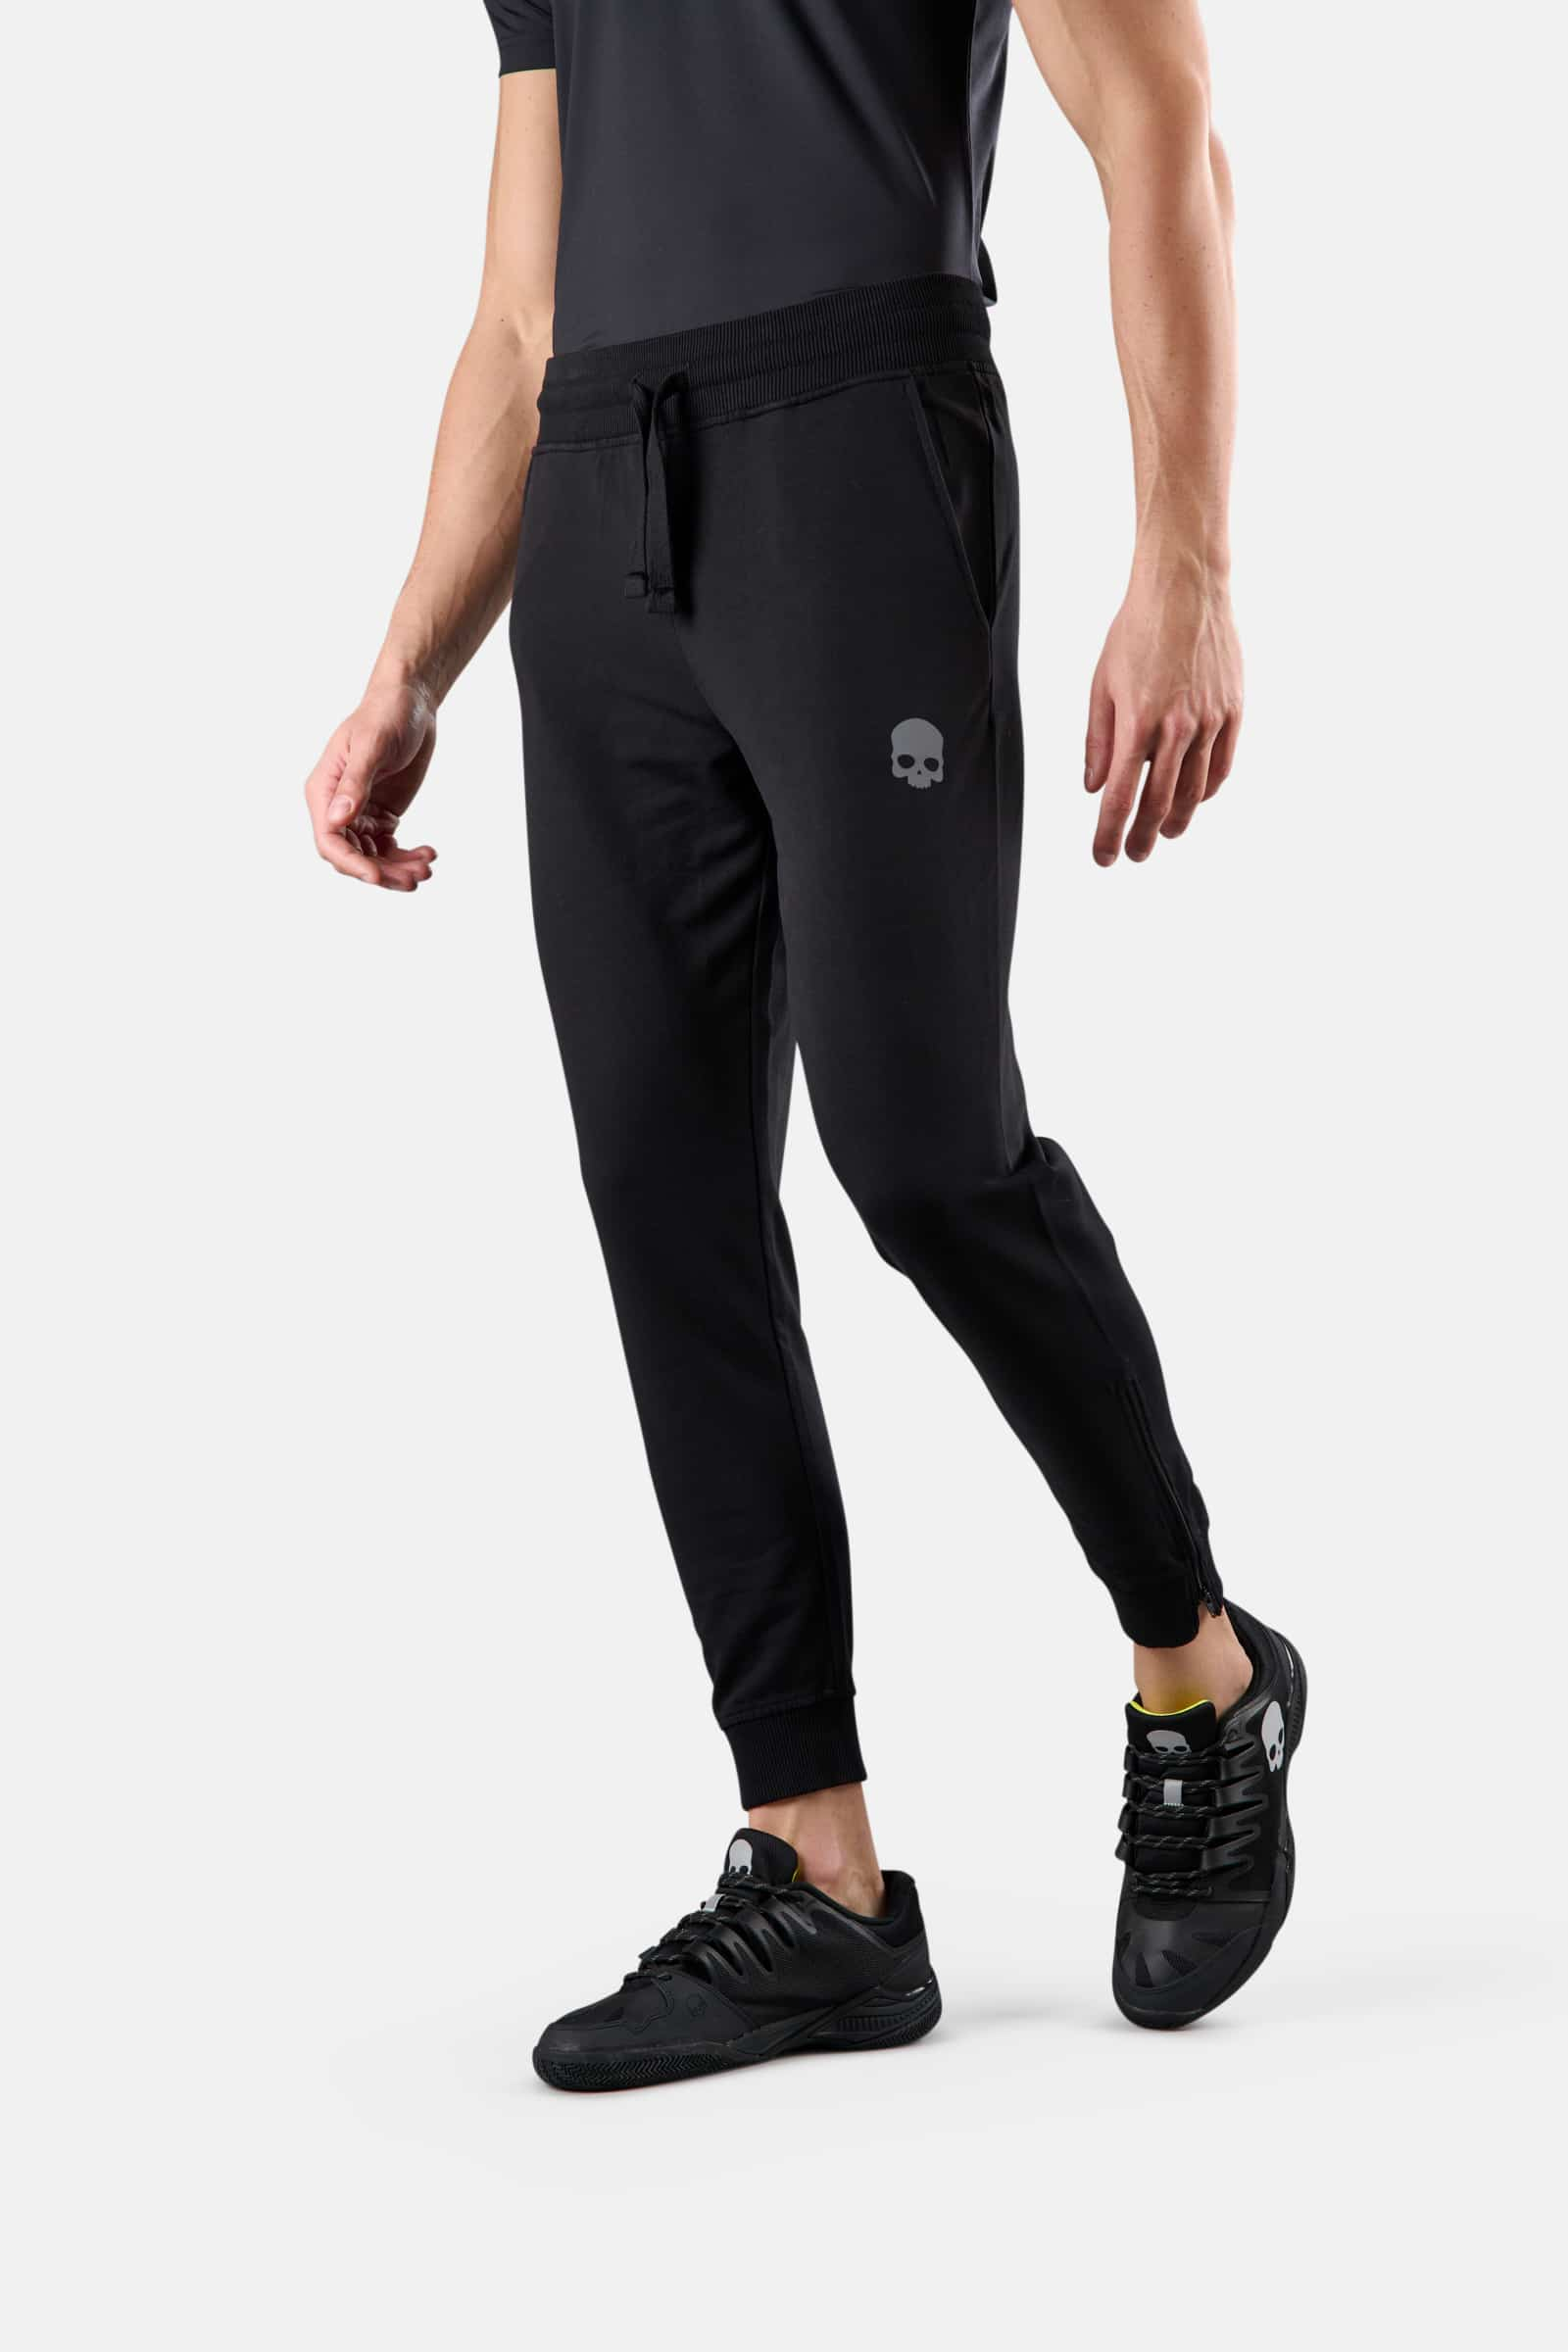 PANTS - BLACK - Hydrogen - Luxury Sportwear